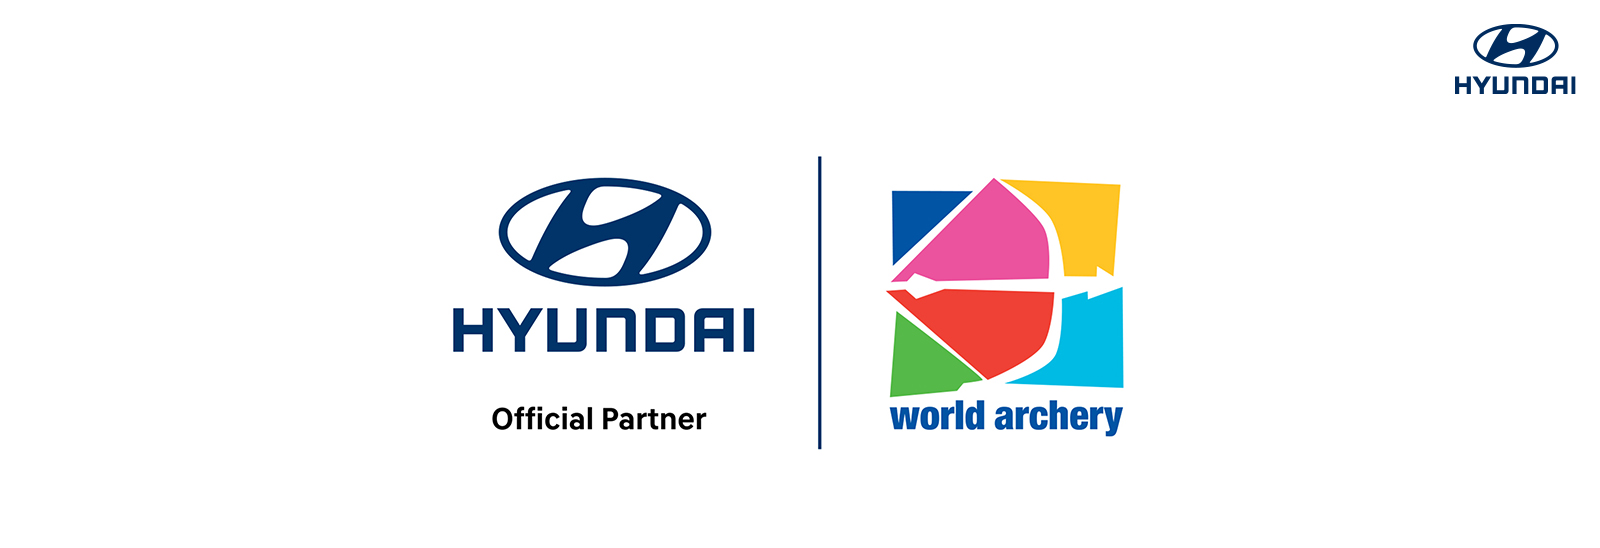 Hyundai patrocinador World Archery hasta 2025